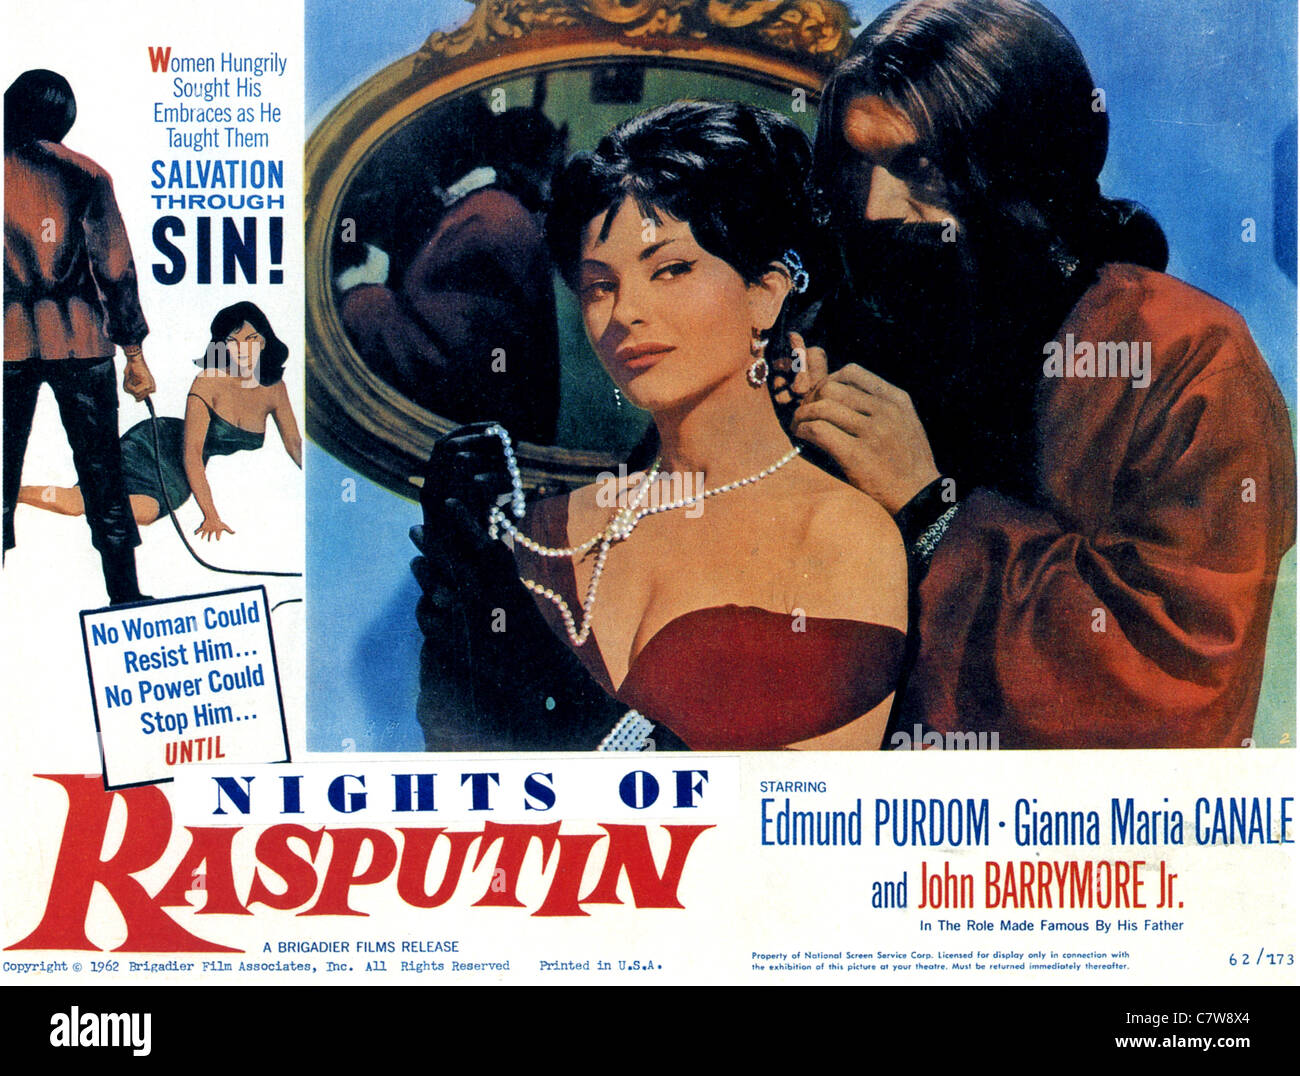 Rasputin's Penis